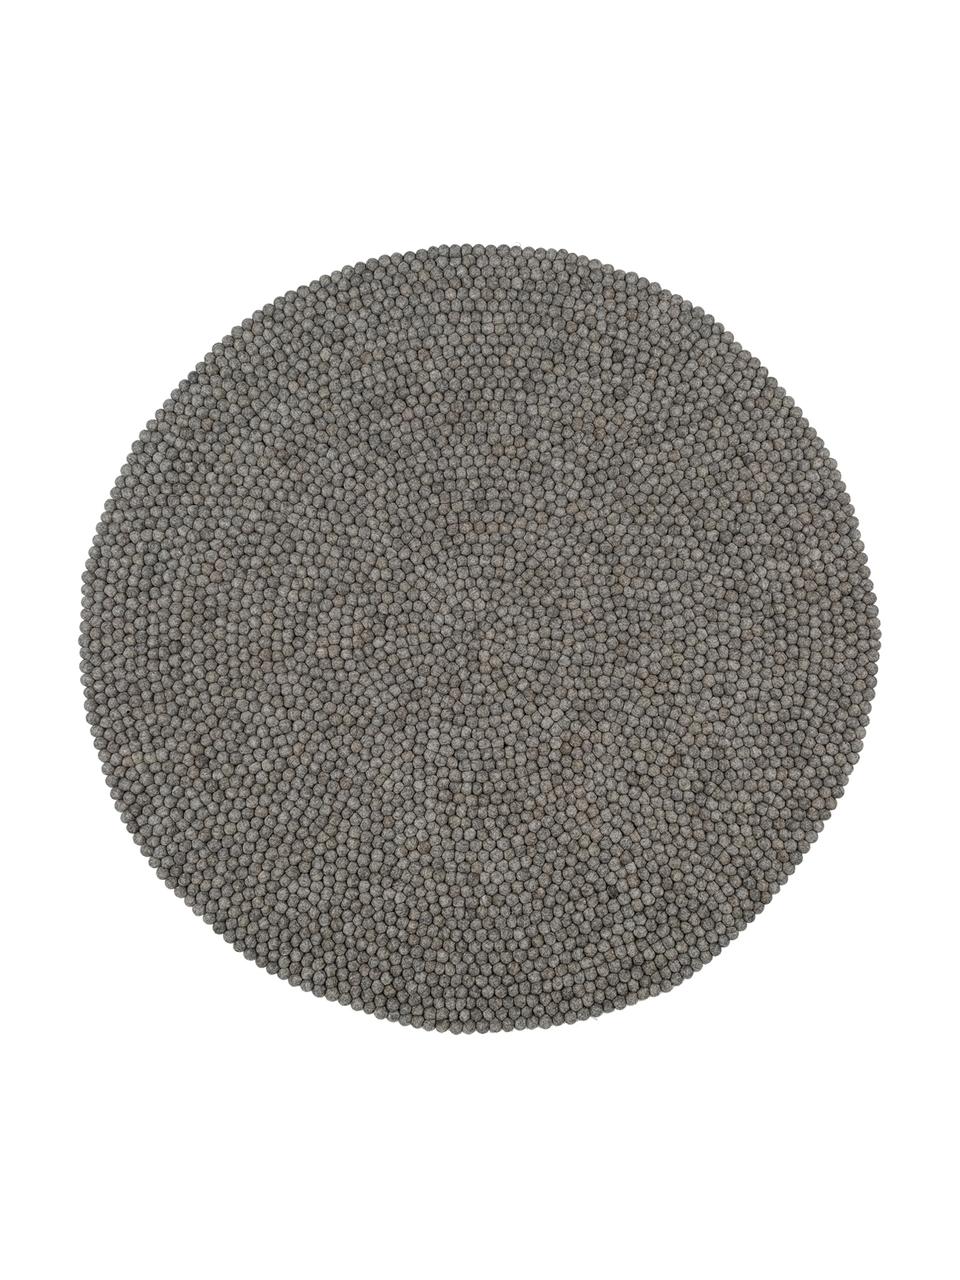 Runder Wollteppich Dot, handgenäht, Stahlgrau, Ø 90 cm (Grösse XS)